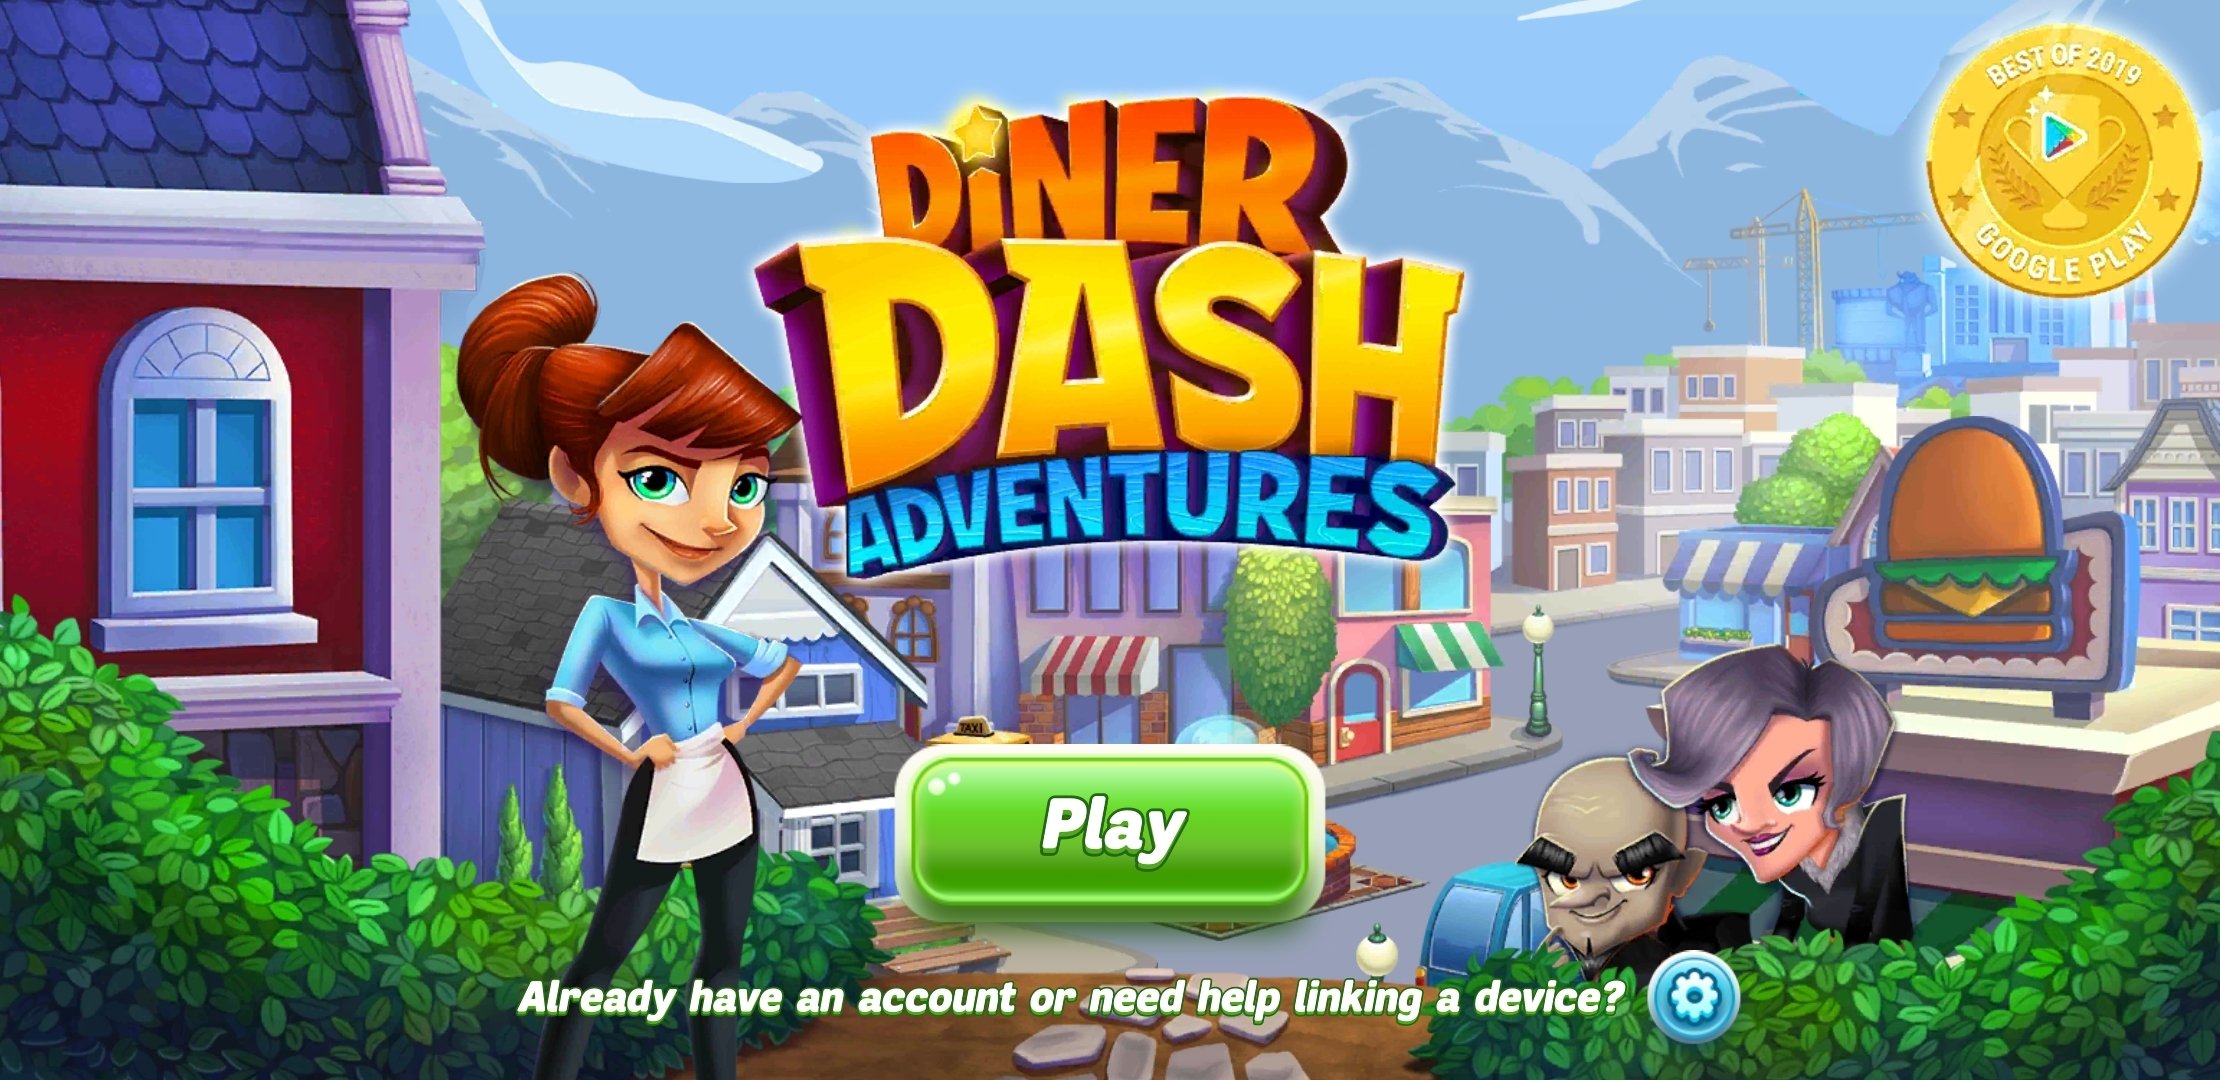 download games diner dash 2